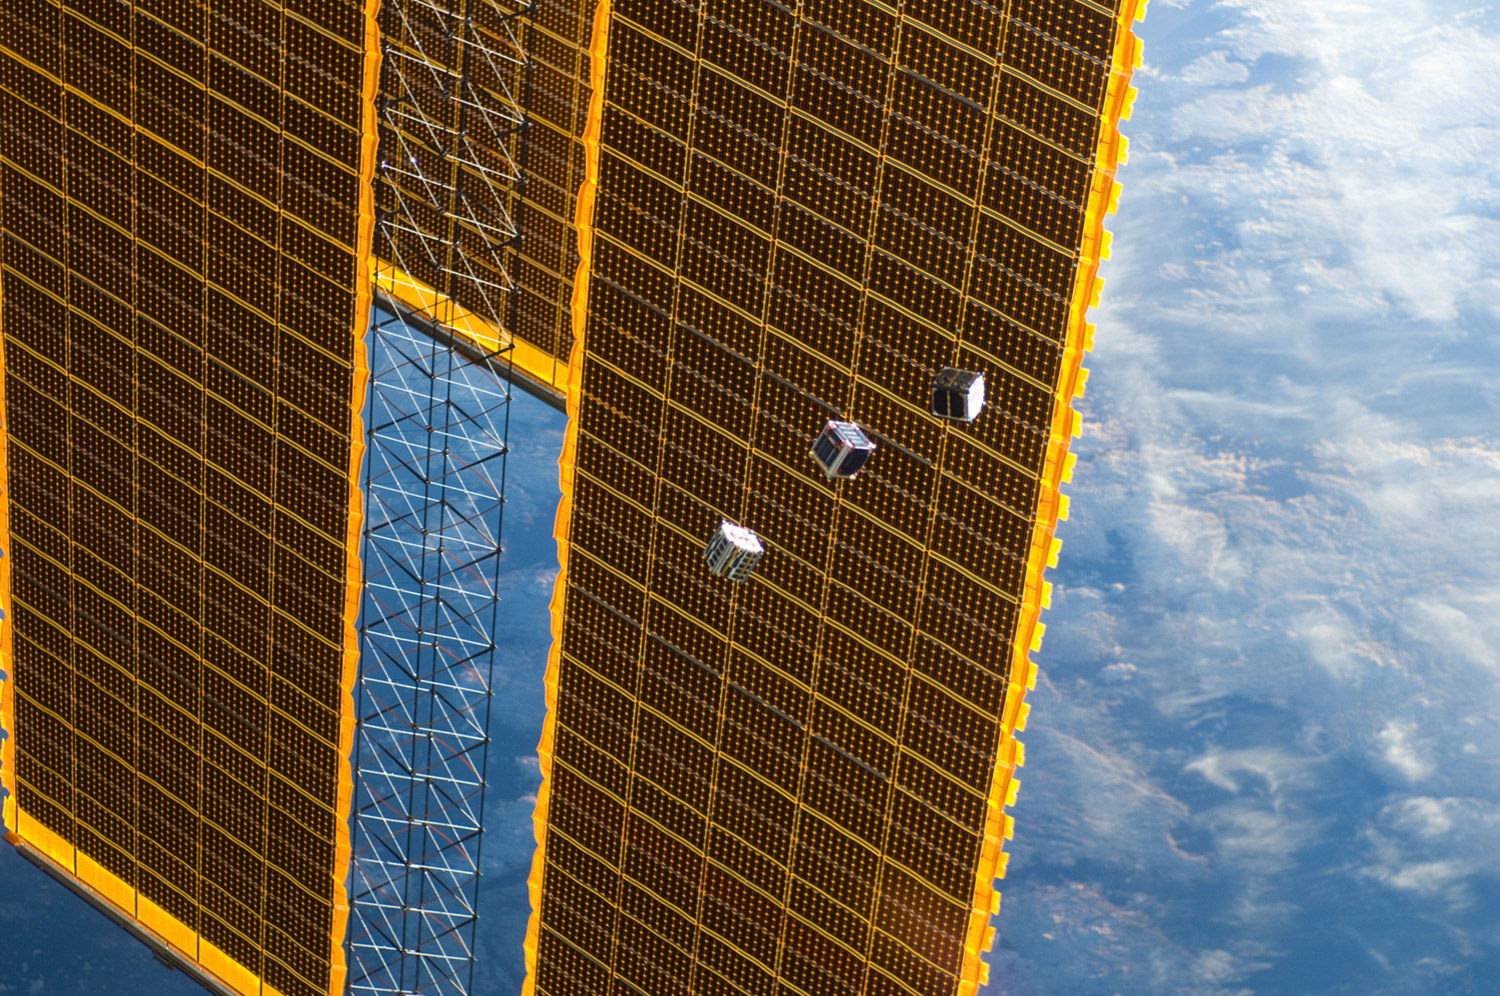 Trois des cinq petits satellites largués depuis la Station spatiale internationale, ici vus devant un des panneaux solaires de l'ISS. © Nasa